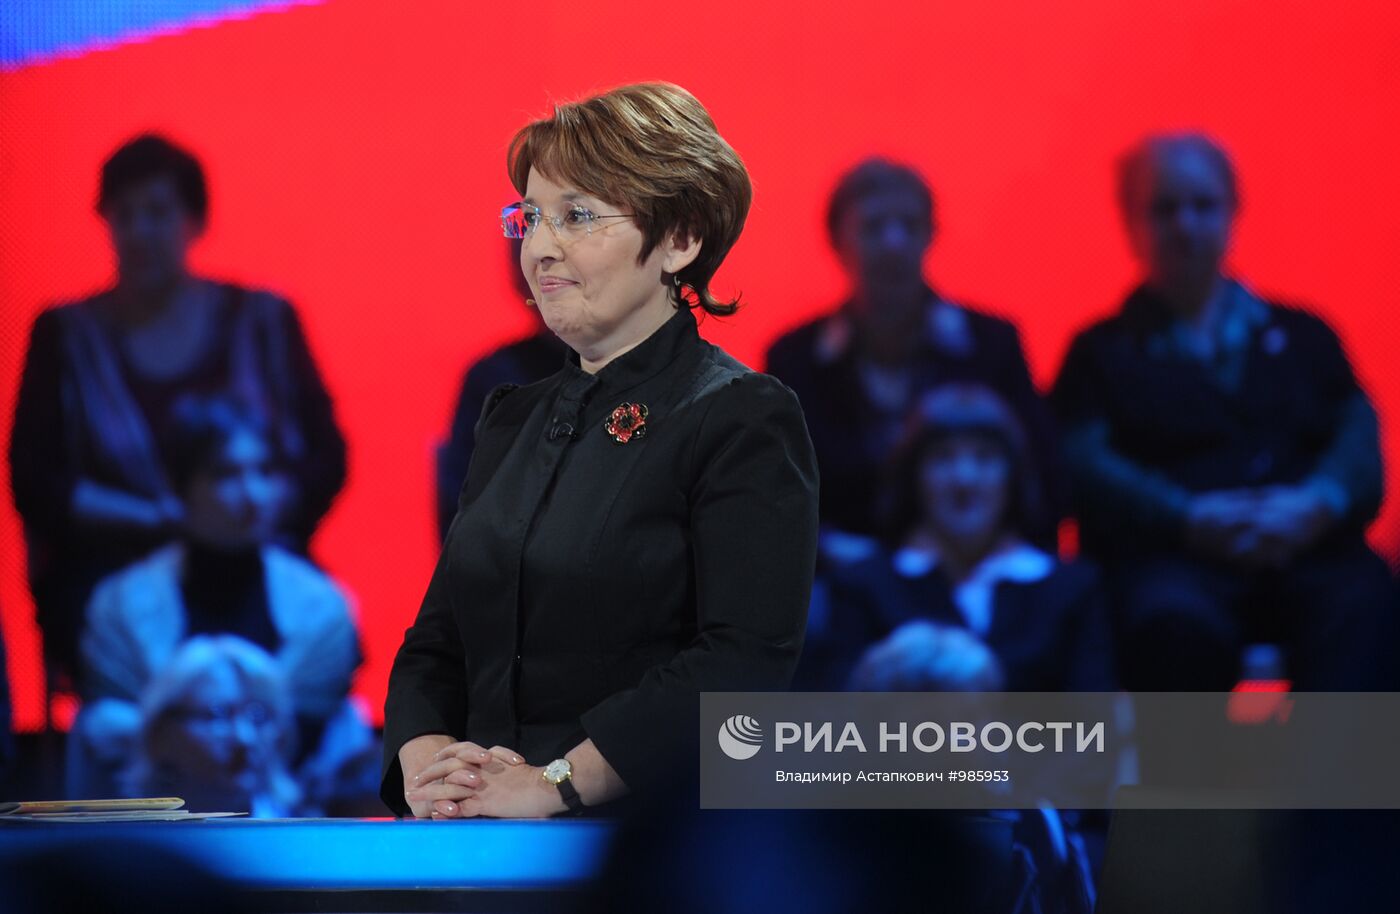 Теледебаты между партиями "Справедливая Россия" и "Яблоко"